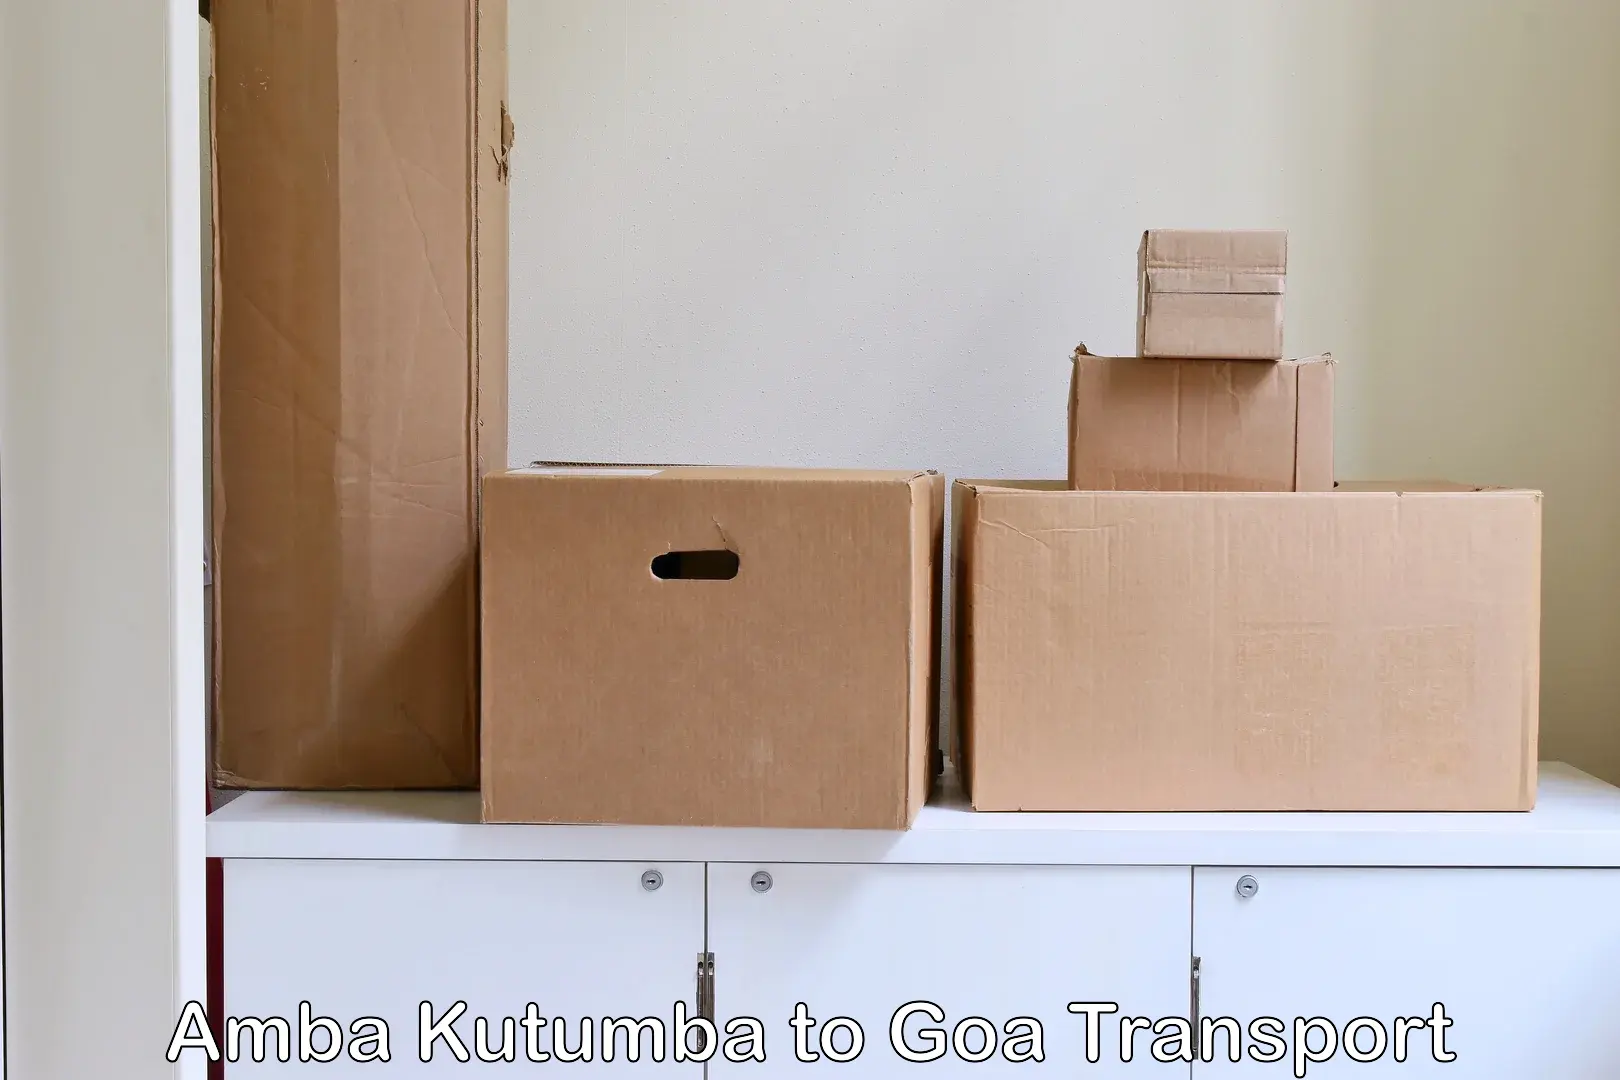 Scooty transport charges Amba Kutumba to NIT Goa